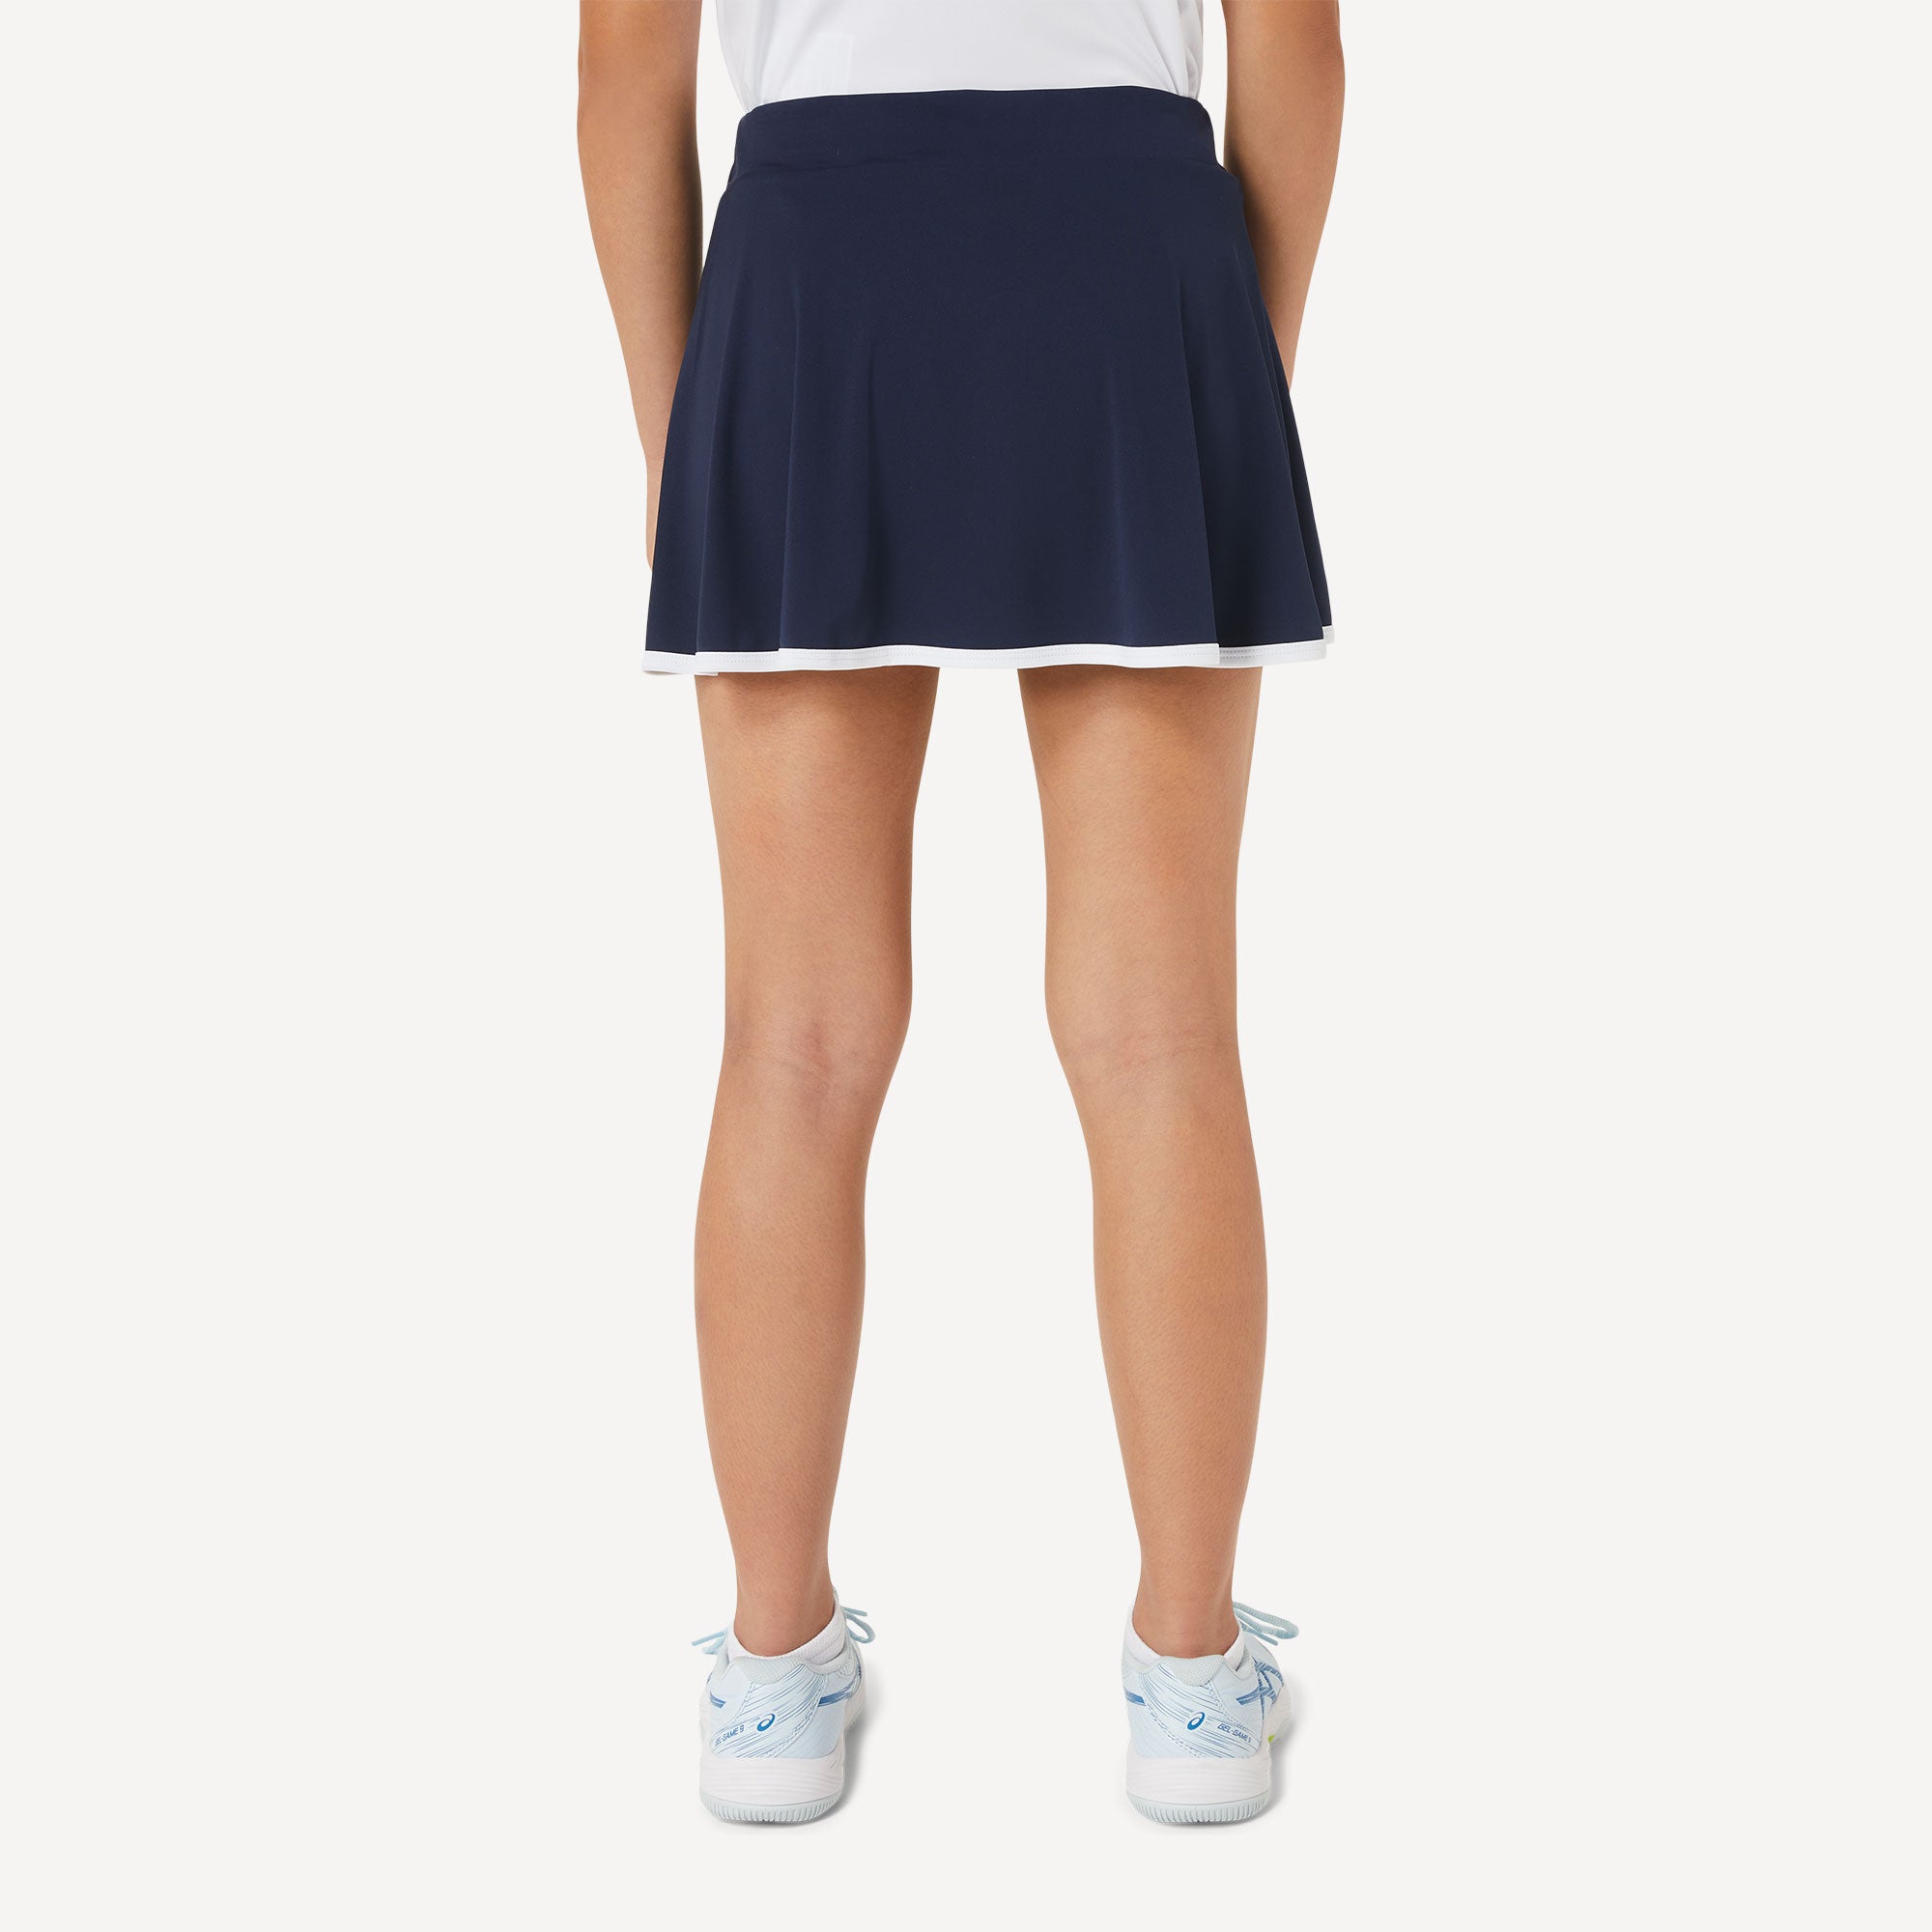 ASICS Girls' Tennis Skort Blue (2)